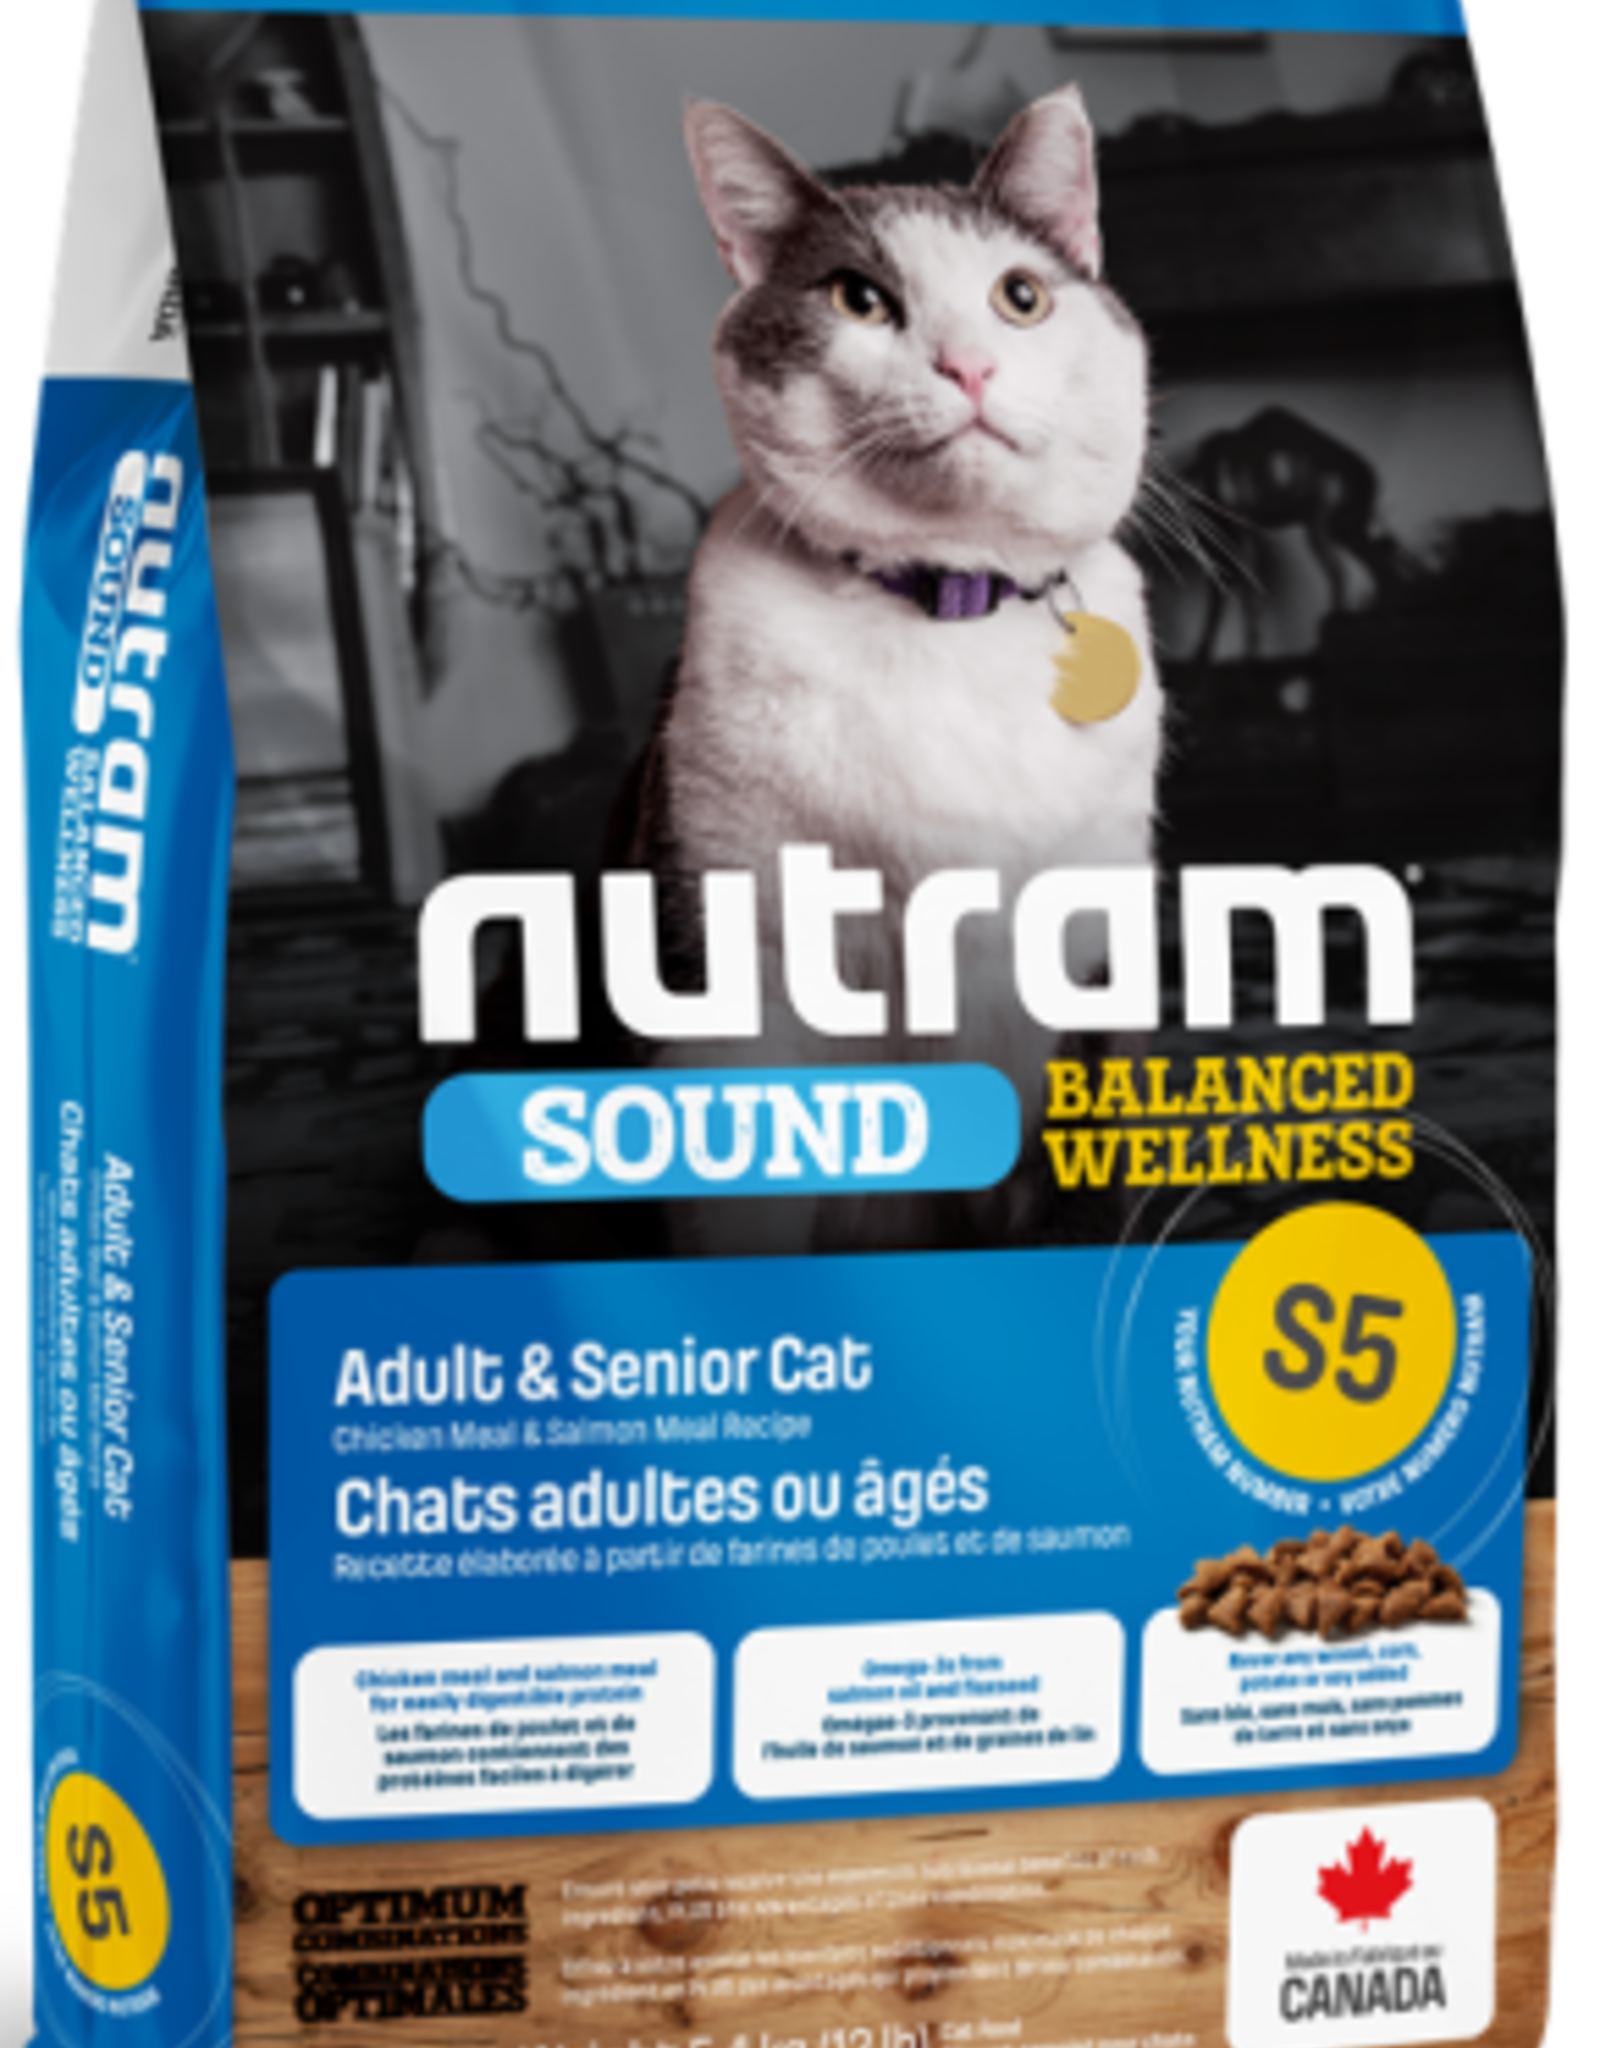 Nutram Nutram S5 Adult & Senior Cat Food